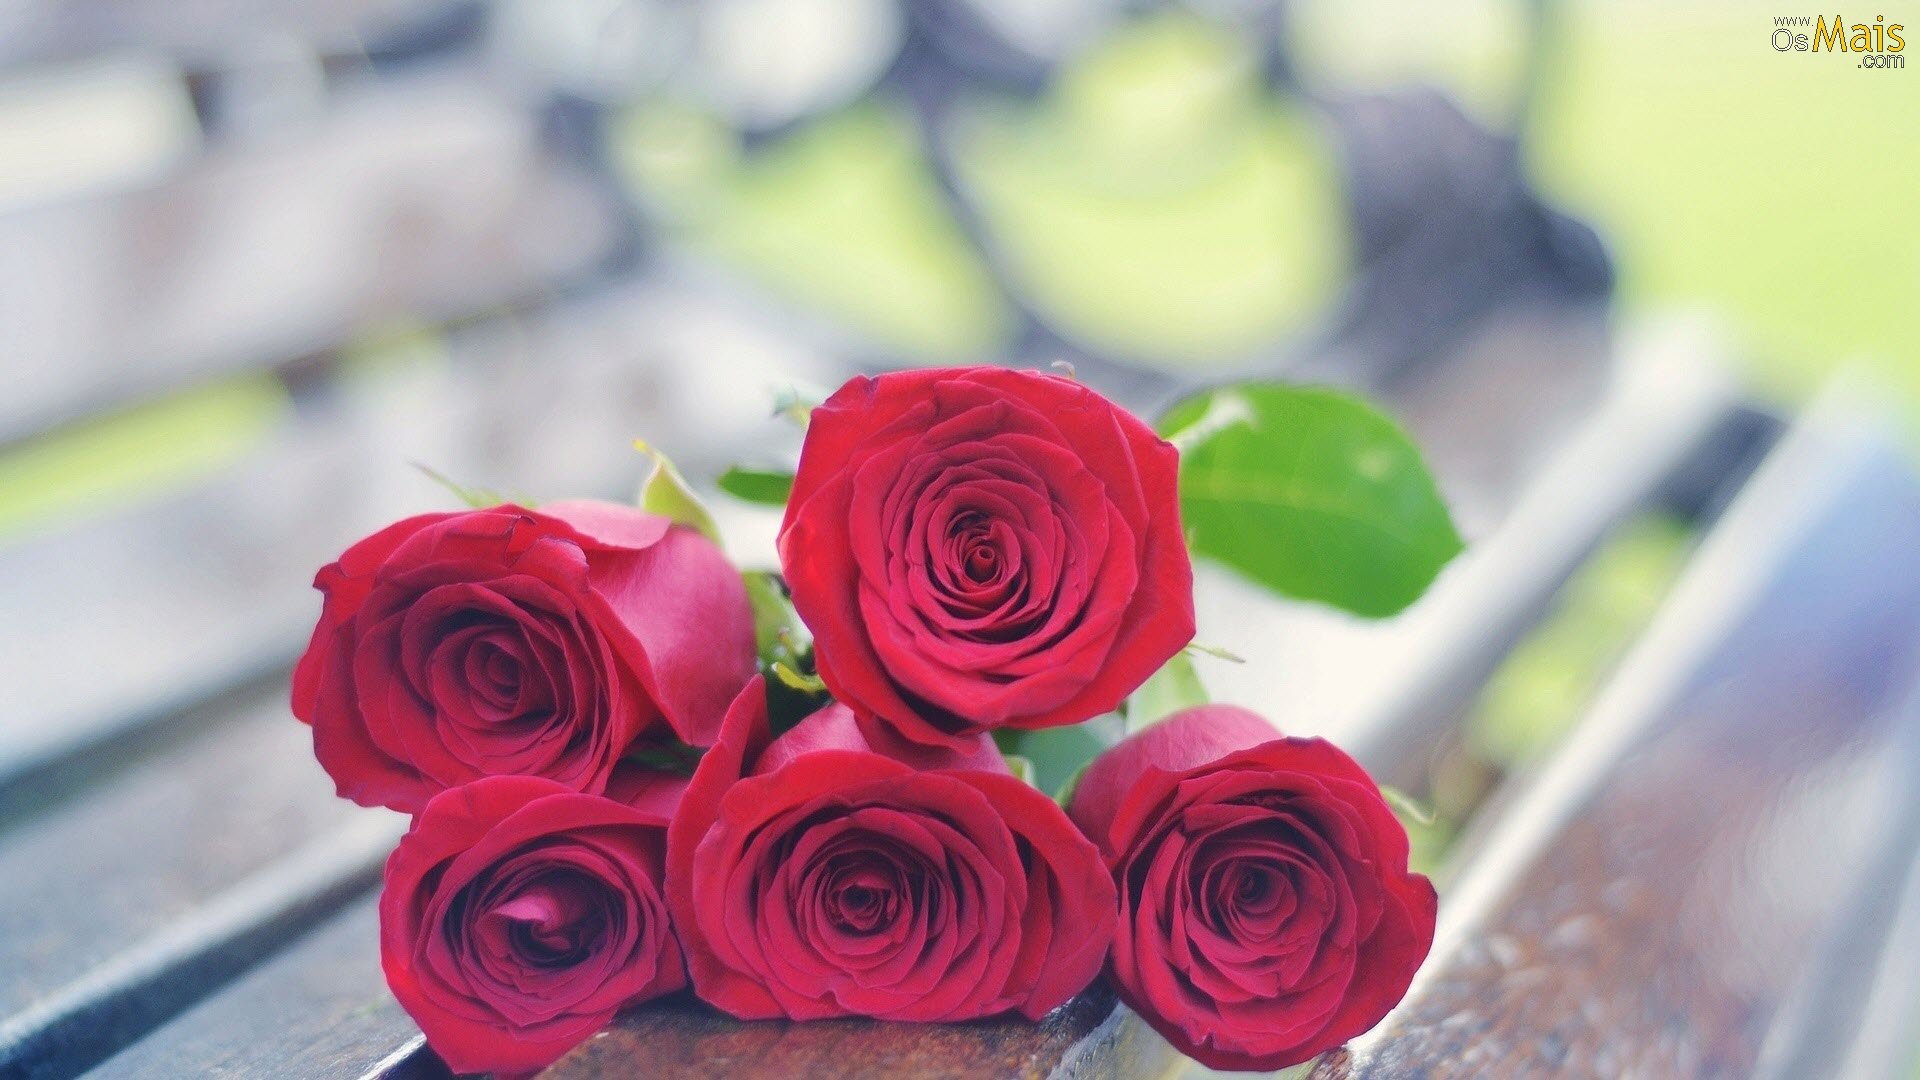 rosas wallpaper,flower,garden roses,rose,pink,red